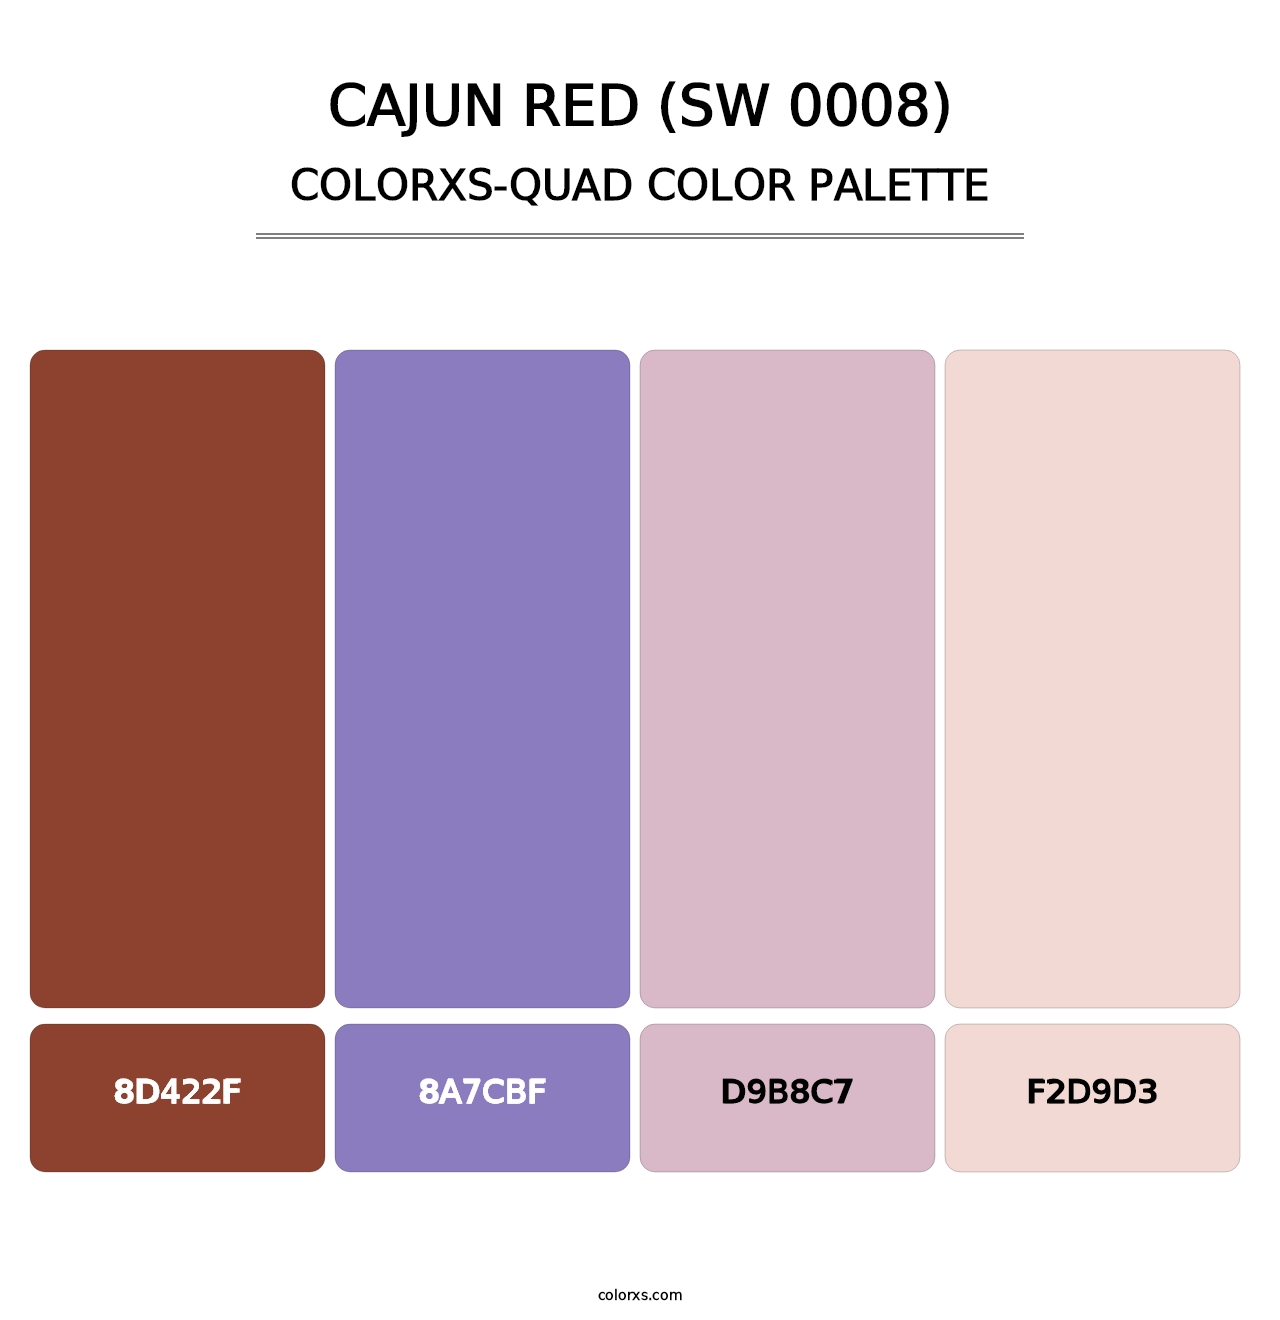 Cajun Red (SW 0008) - Colorxs Quad Palette